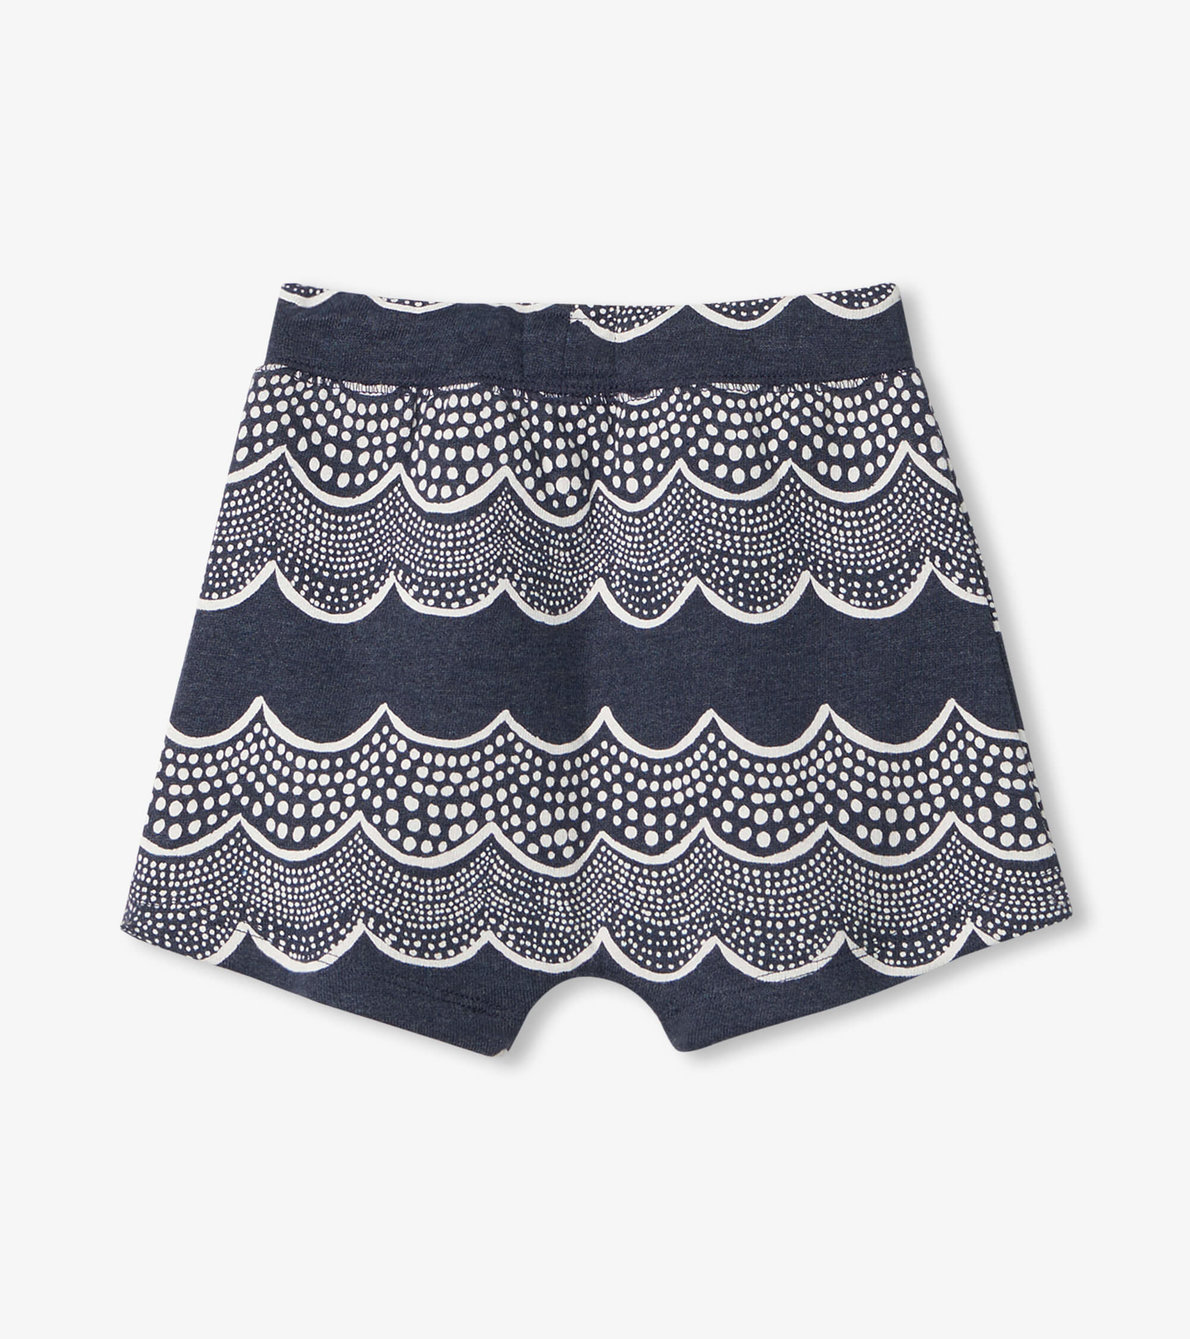 View larger image of Ocean Waves Baby Kanga Pocket Shorts